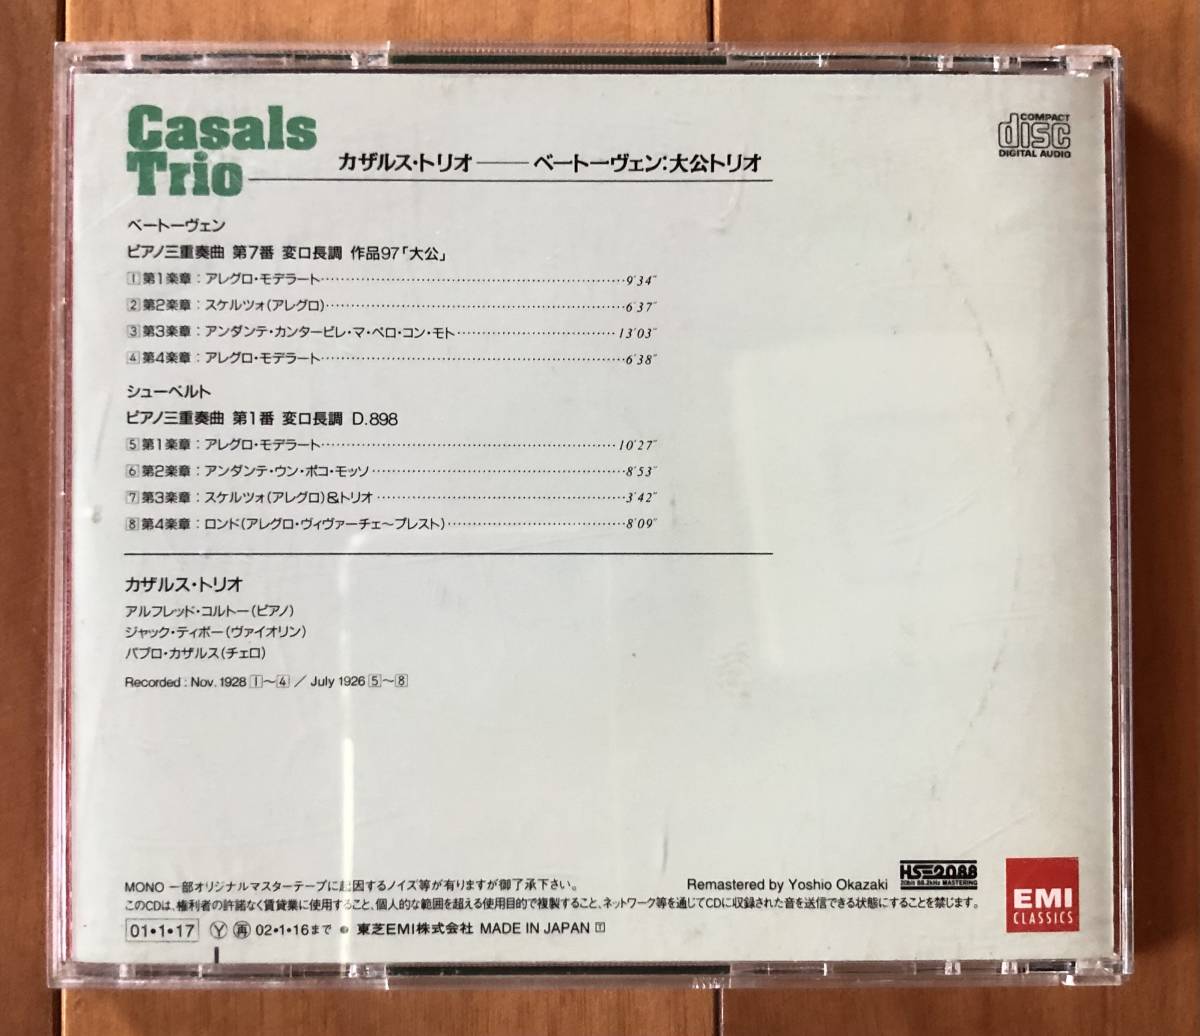 CD-Sep / 日 東芝EMI / カザルス・トリオ / ベートーヴェン_ピアノ三重奏曲 第７番「大公」ほか